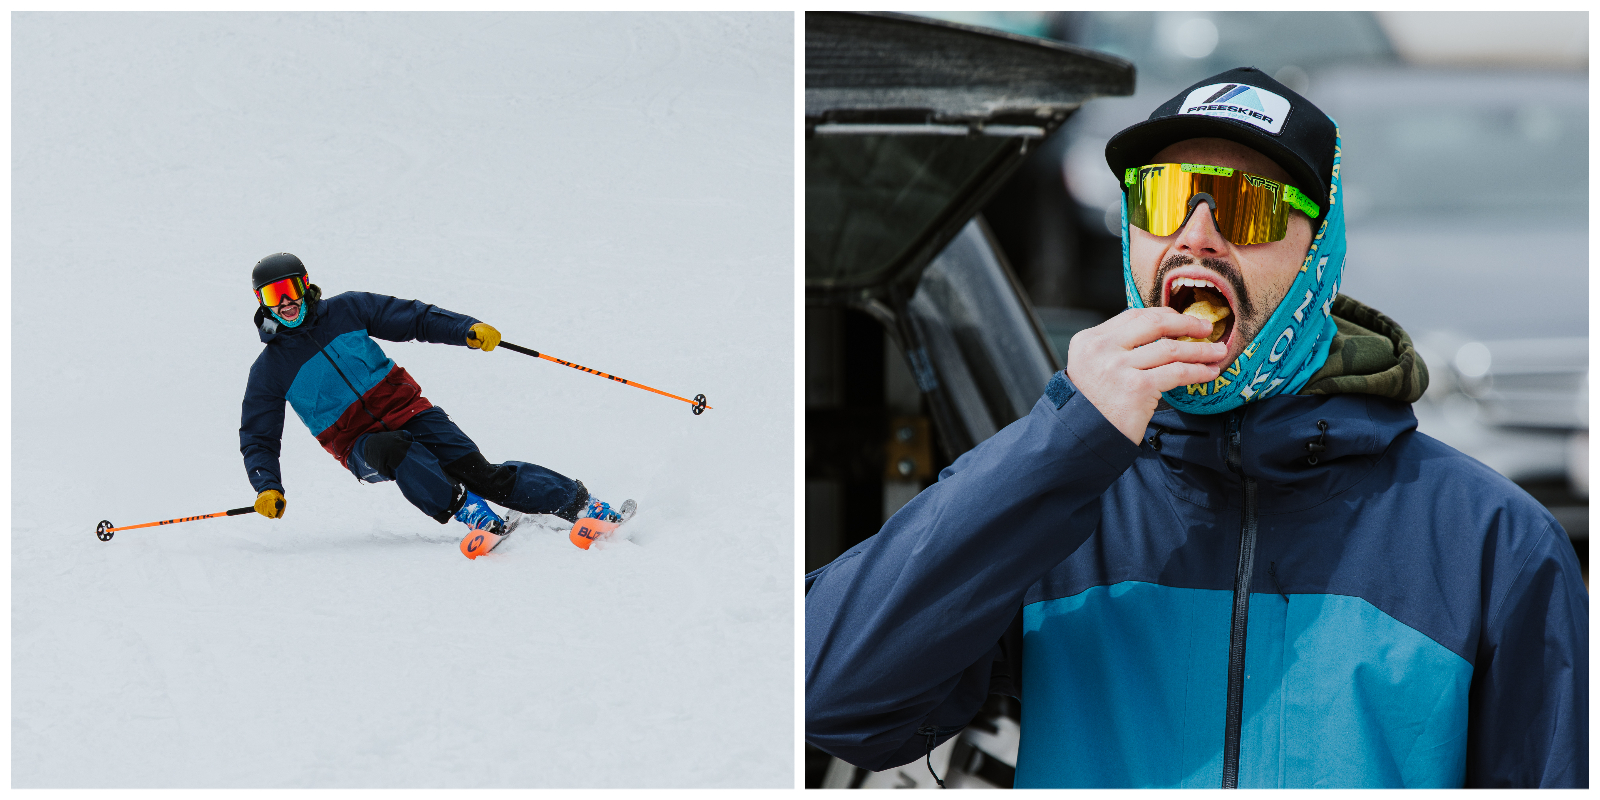 skiing, ski test, ski demo, Tecnica, Blizzard, Blizzard skis, Tecnica boots, snow, winter, Sunapee, Sunapee Mountain, New Hampshire, TSM, The Ski Monster